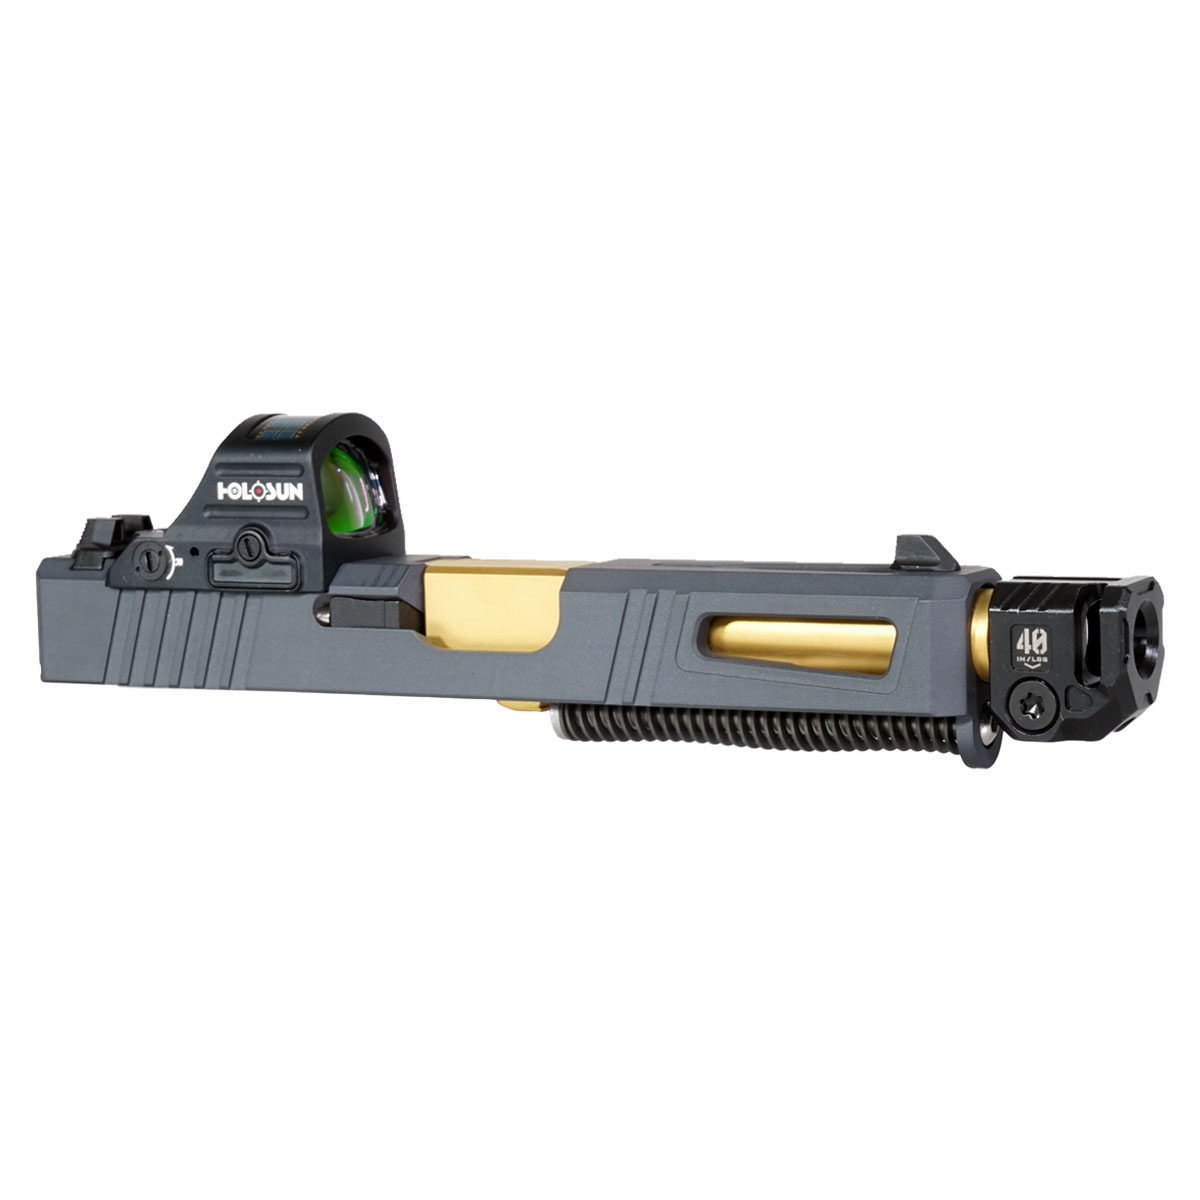 DD 'Steele V2' 9mm Complete Slide Kit - Glock 19 Gen 1-3 Compatible